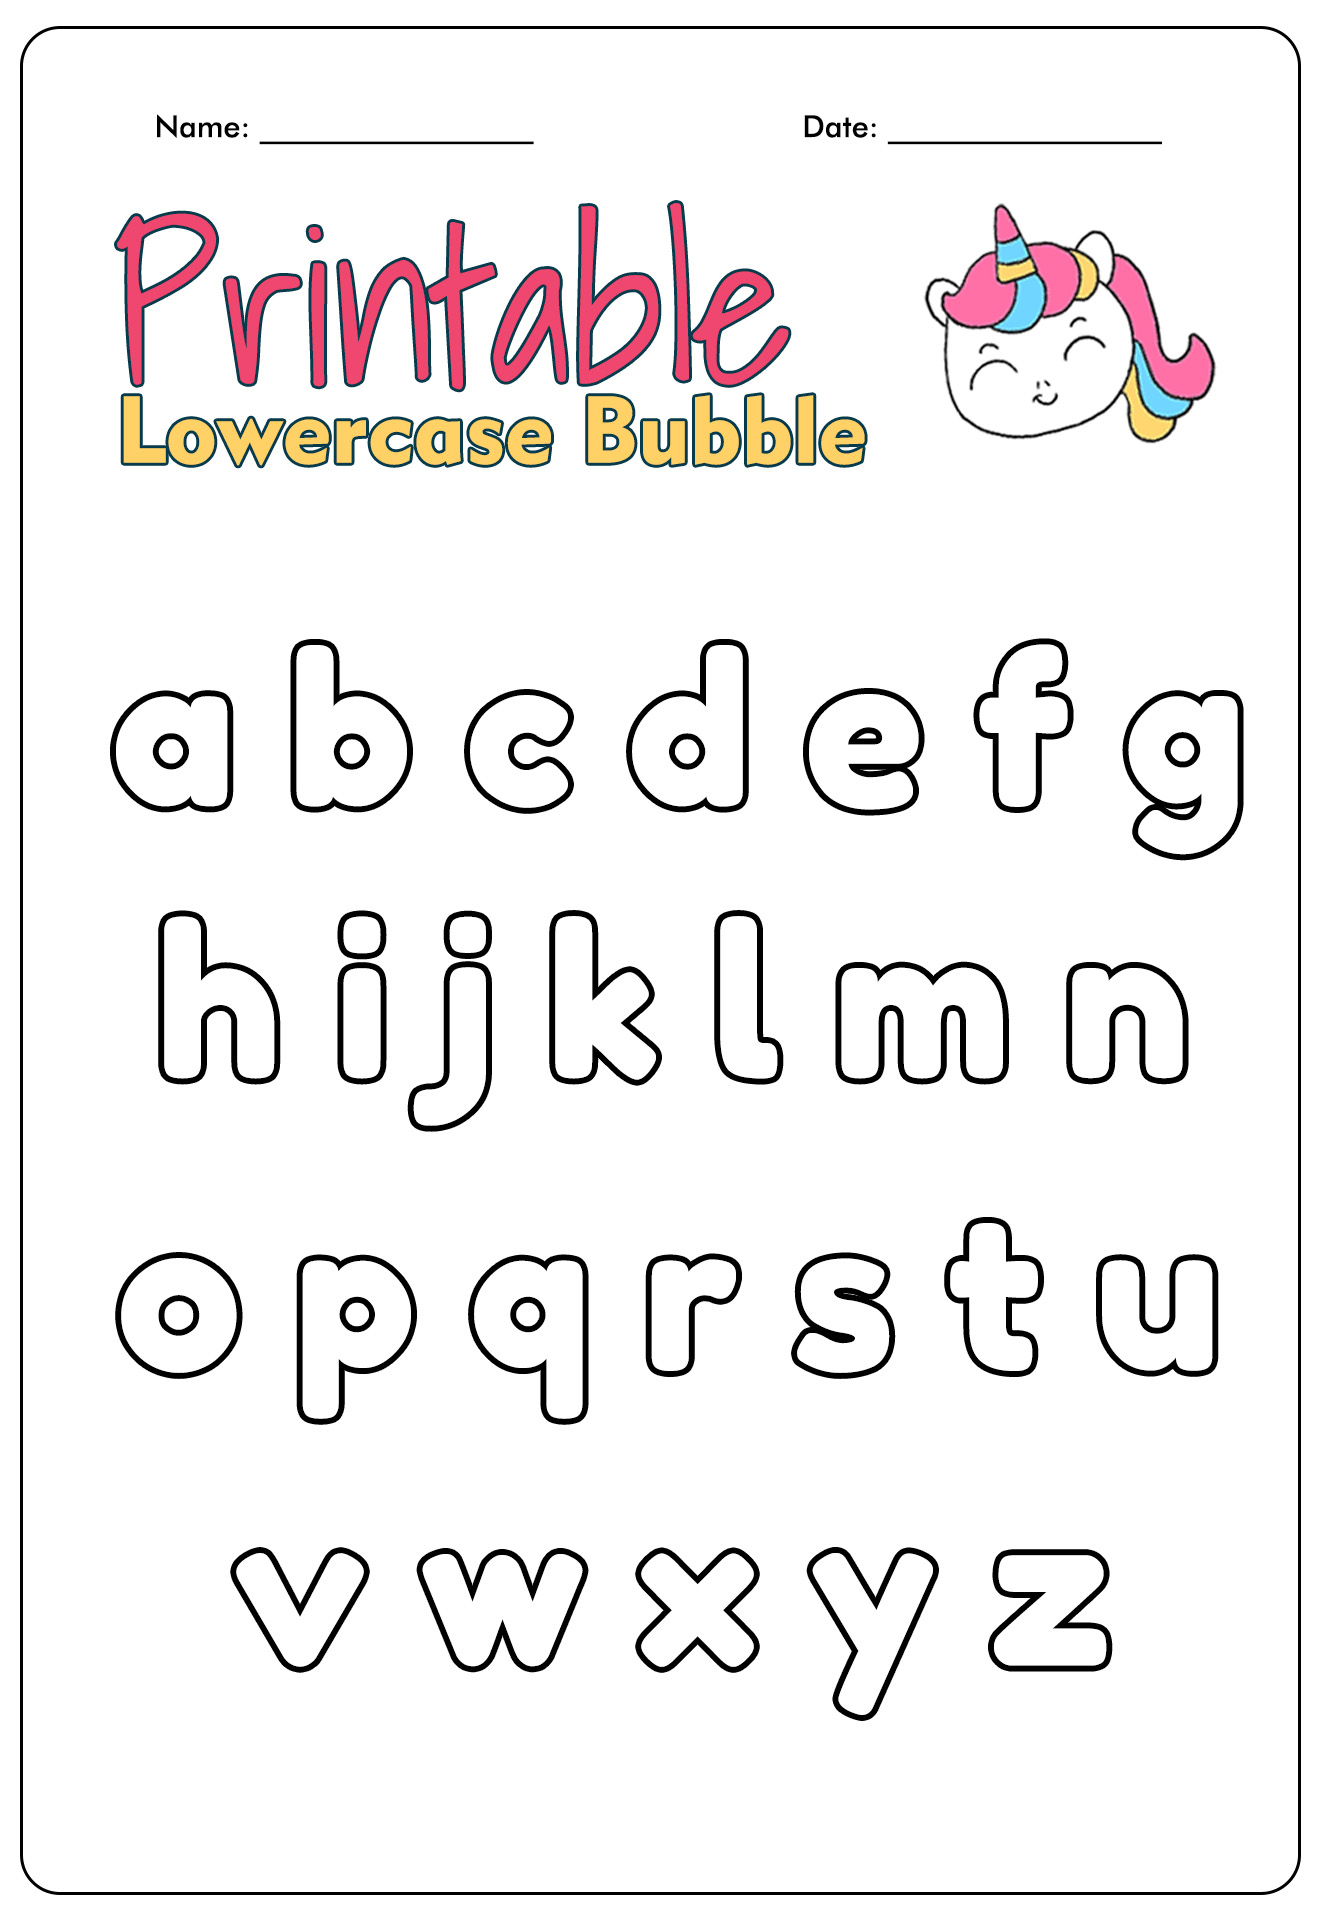 Printable Lowercase Bubble Letters Alphabet Stencils